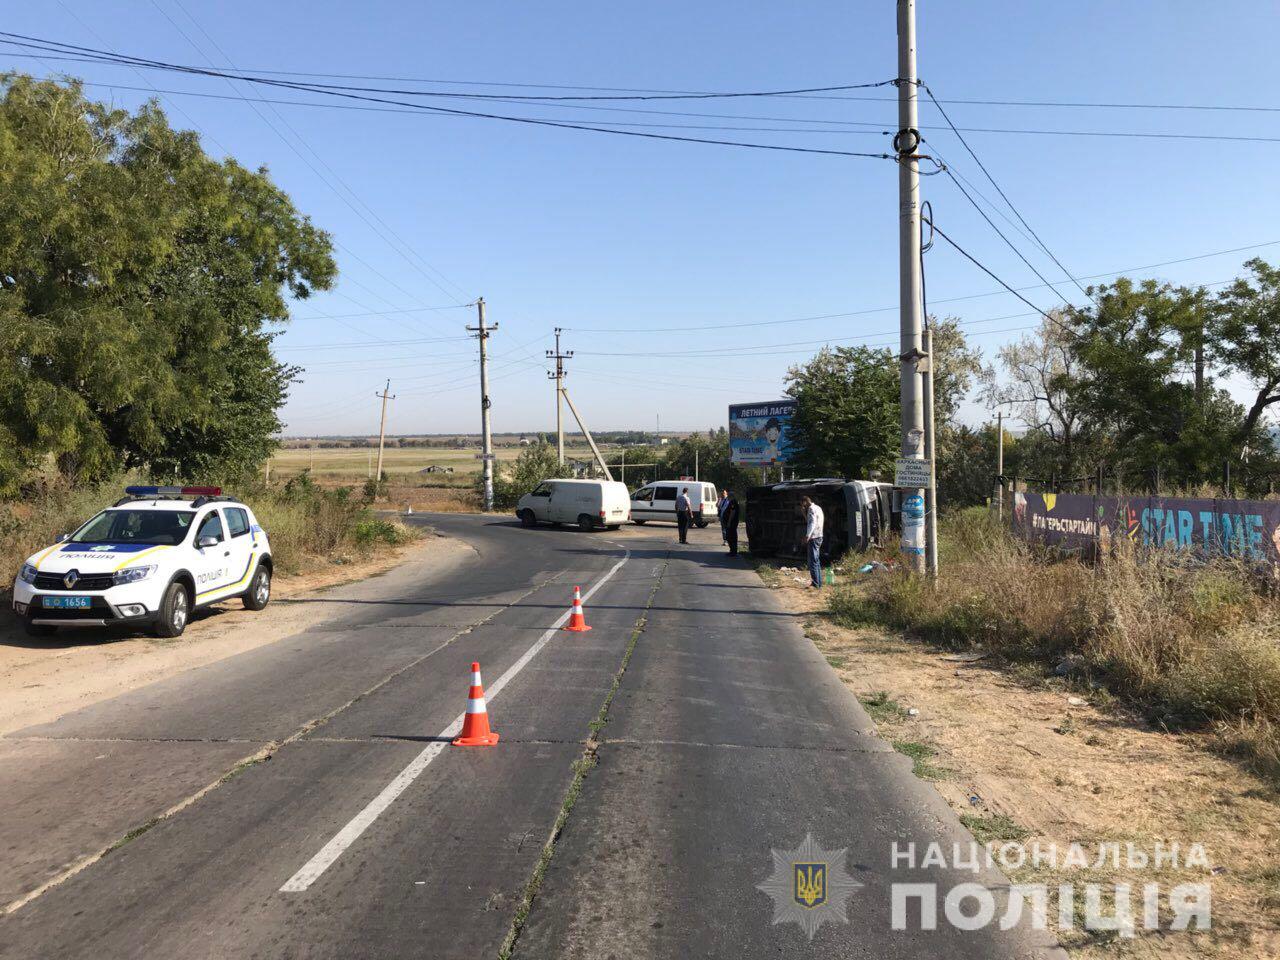 Микроавтобус с пассажирами, которые ехали на отдых в Залив, перевернулся возле Грибовки. 11 человек пострадали